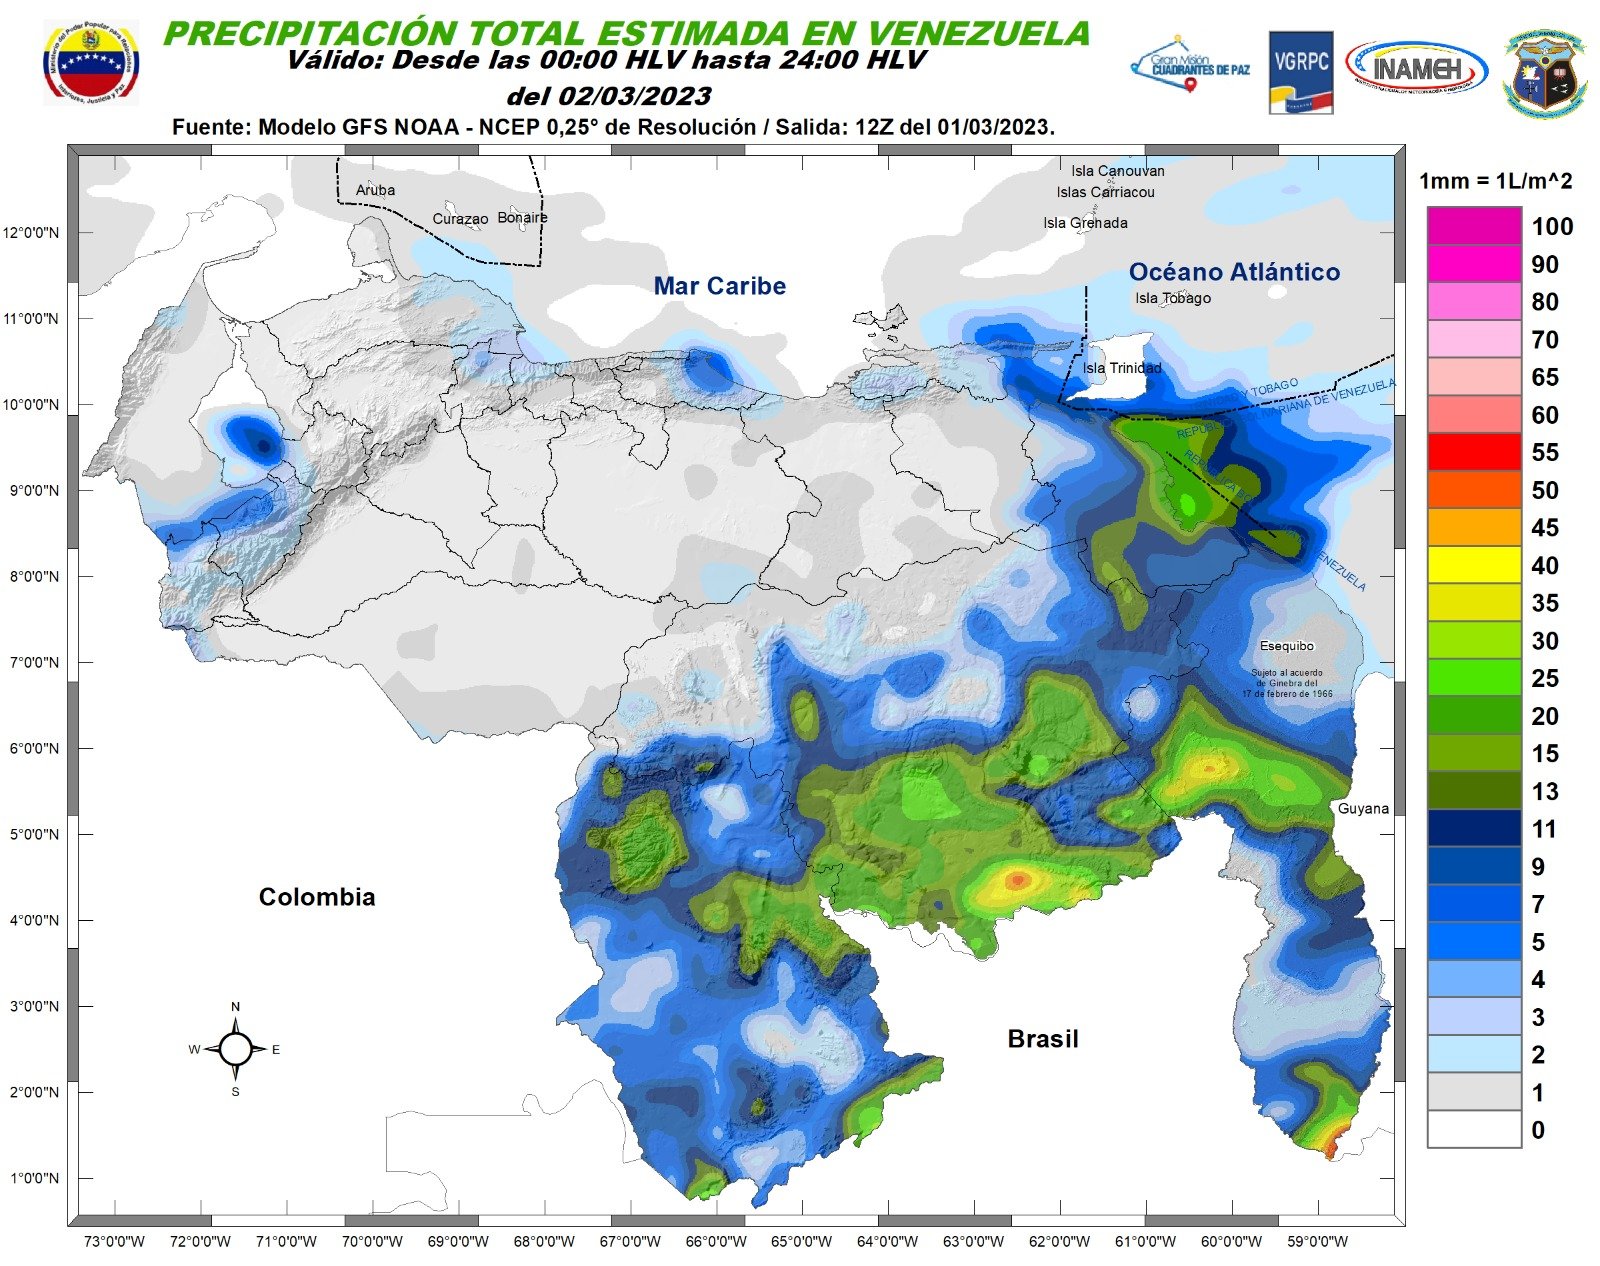 Inameh prevé nubosidad y lloviznas en algunas zonas de Venezuela este #2Mar